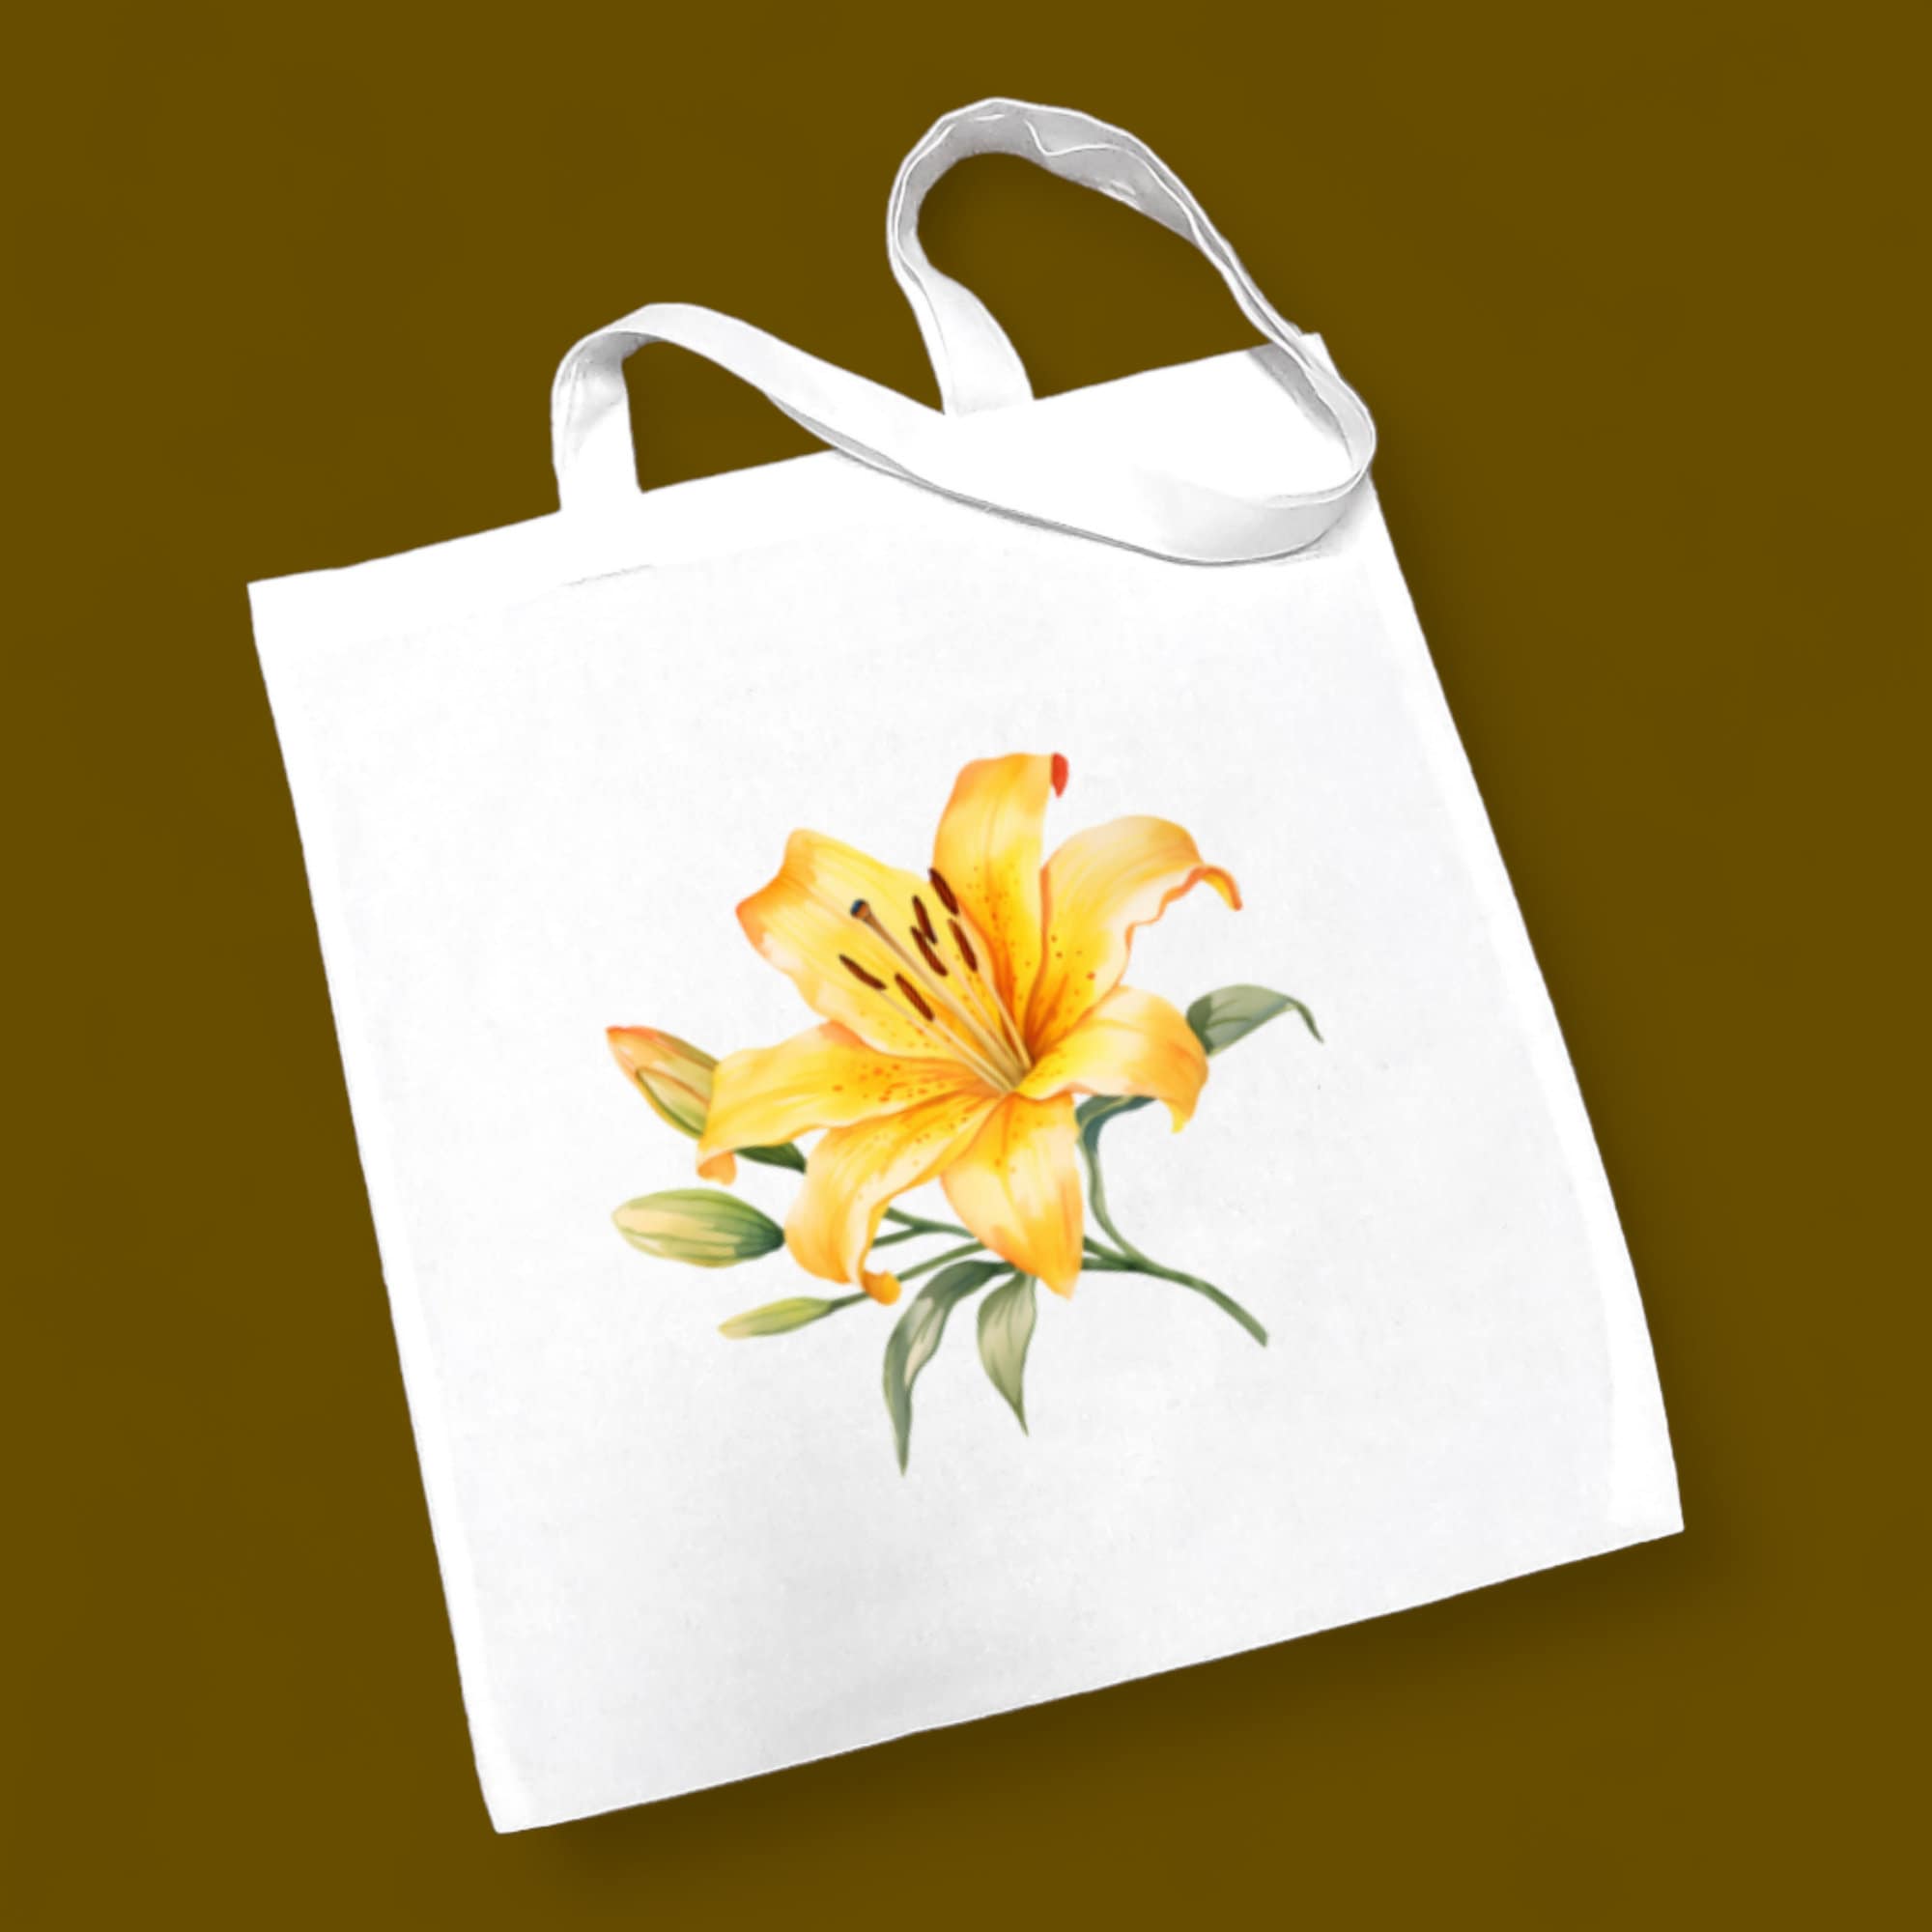 Stofftasche, Stoffbeutel, Einkaufstasche, Tasche, Geschenk zum Muttertag, Geburtstag in Weiß oder Beige "Lilie Blüte Gelb"